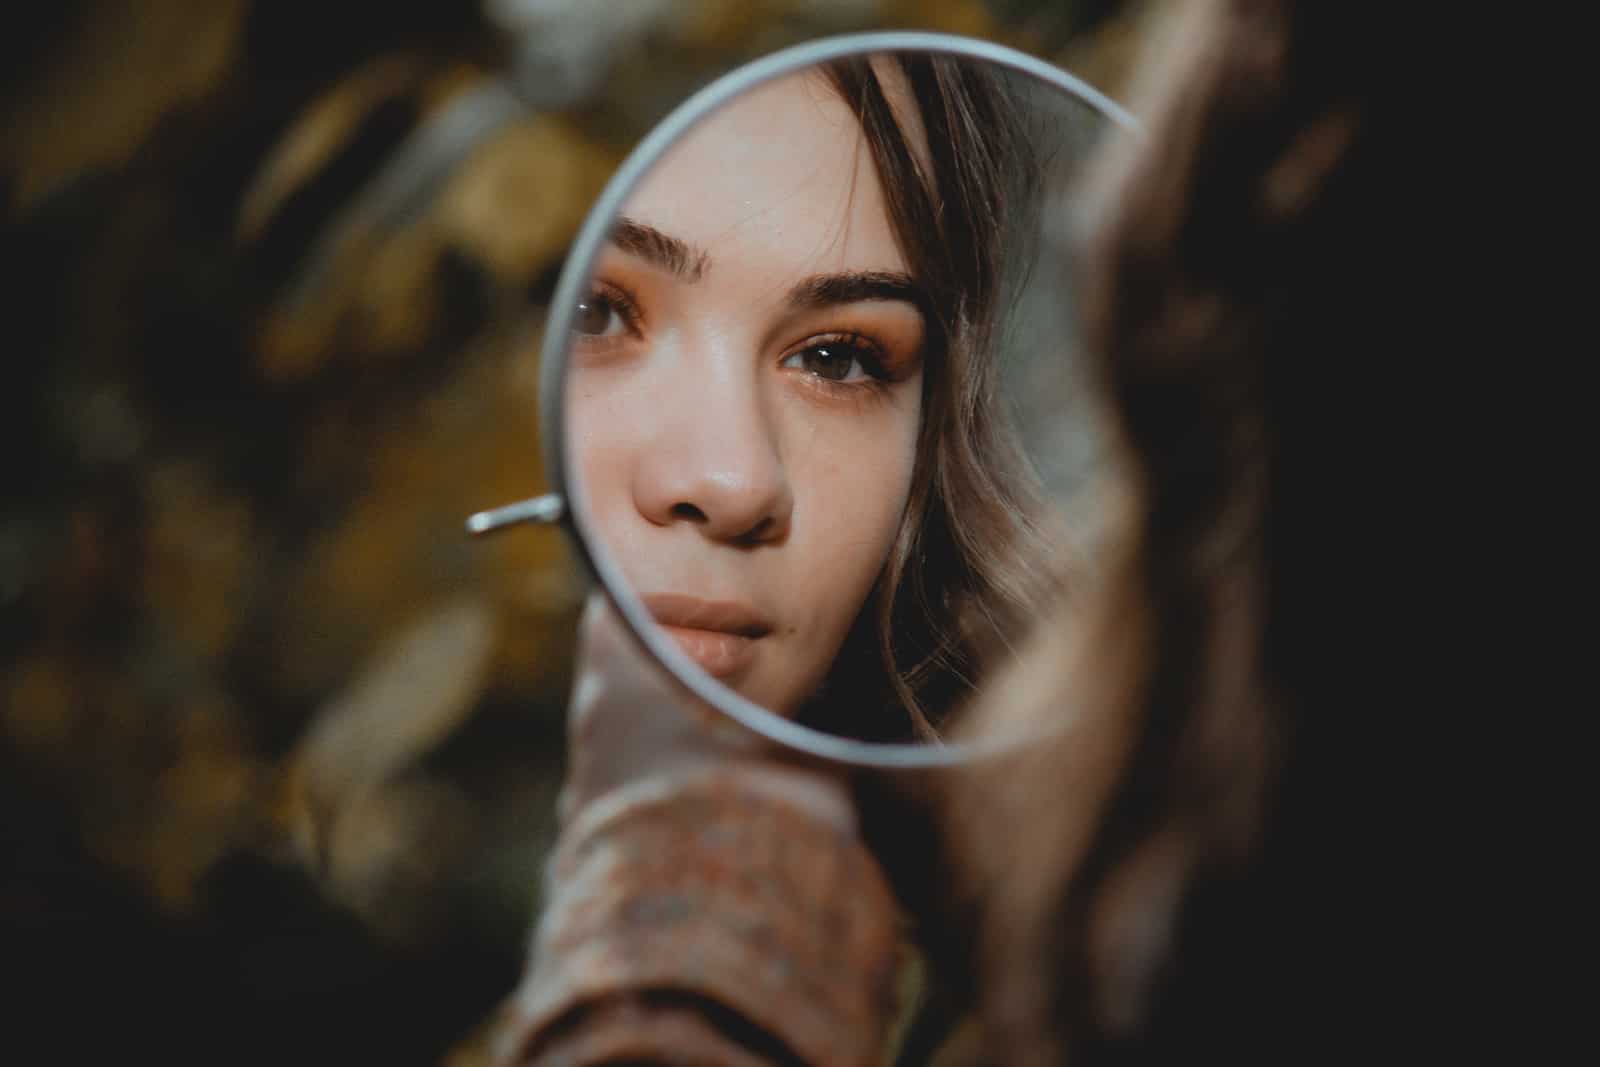 mujer mirándose al espejo y pensando